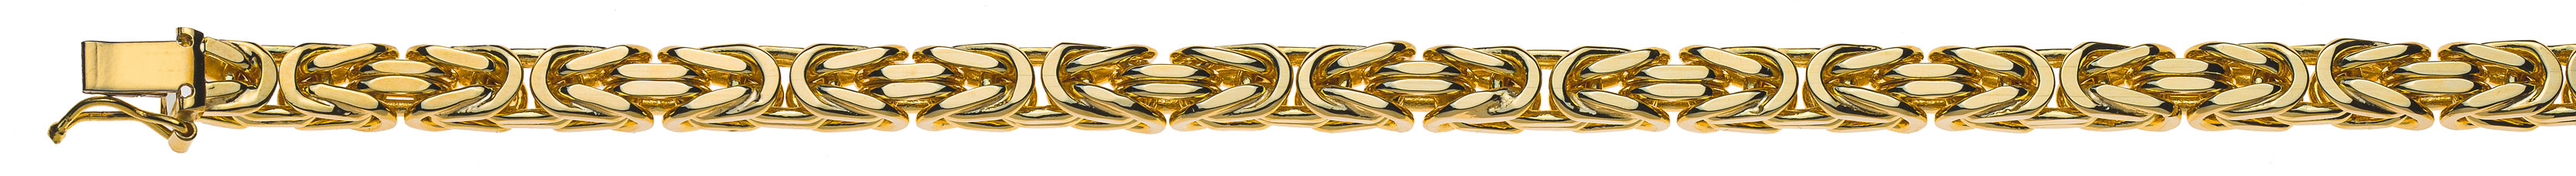 AURONOS Prestige Halskette Gelbgold 18K Königskette 60cm 5mm